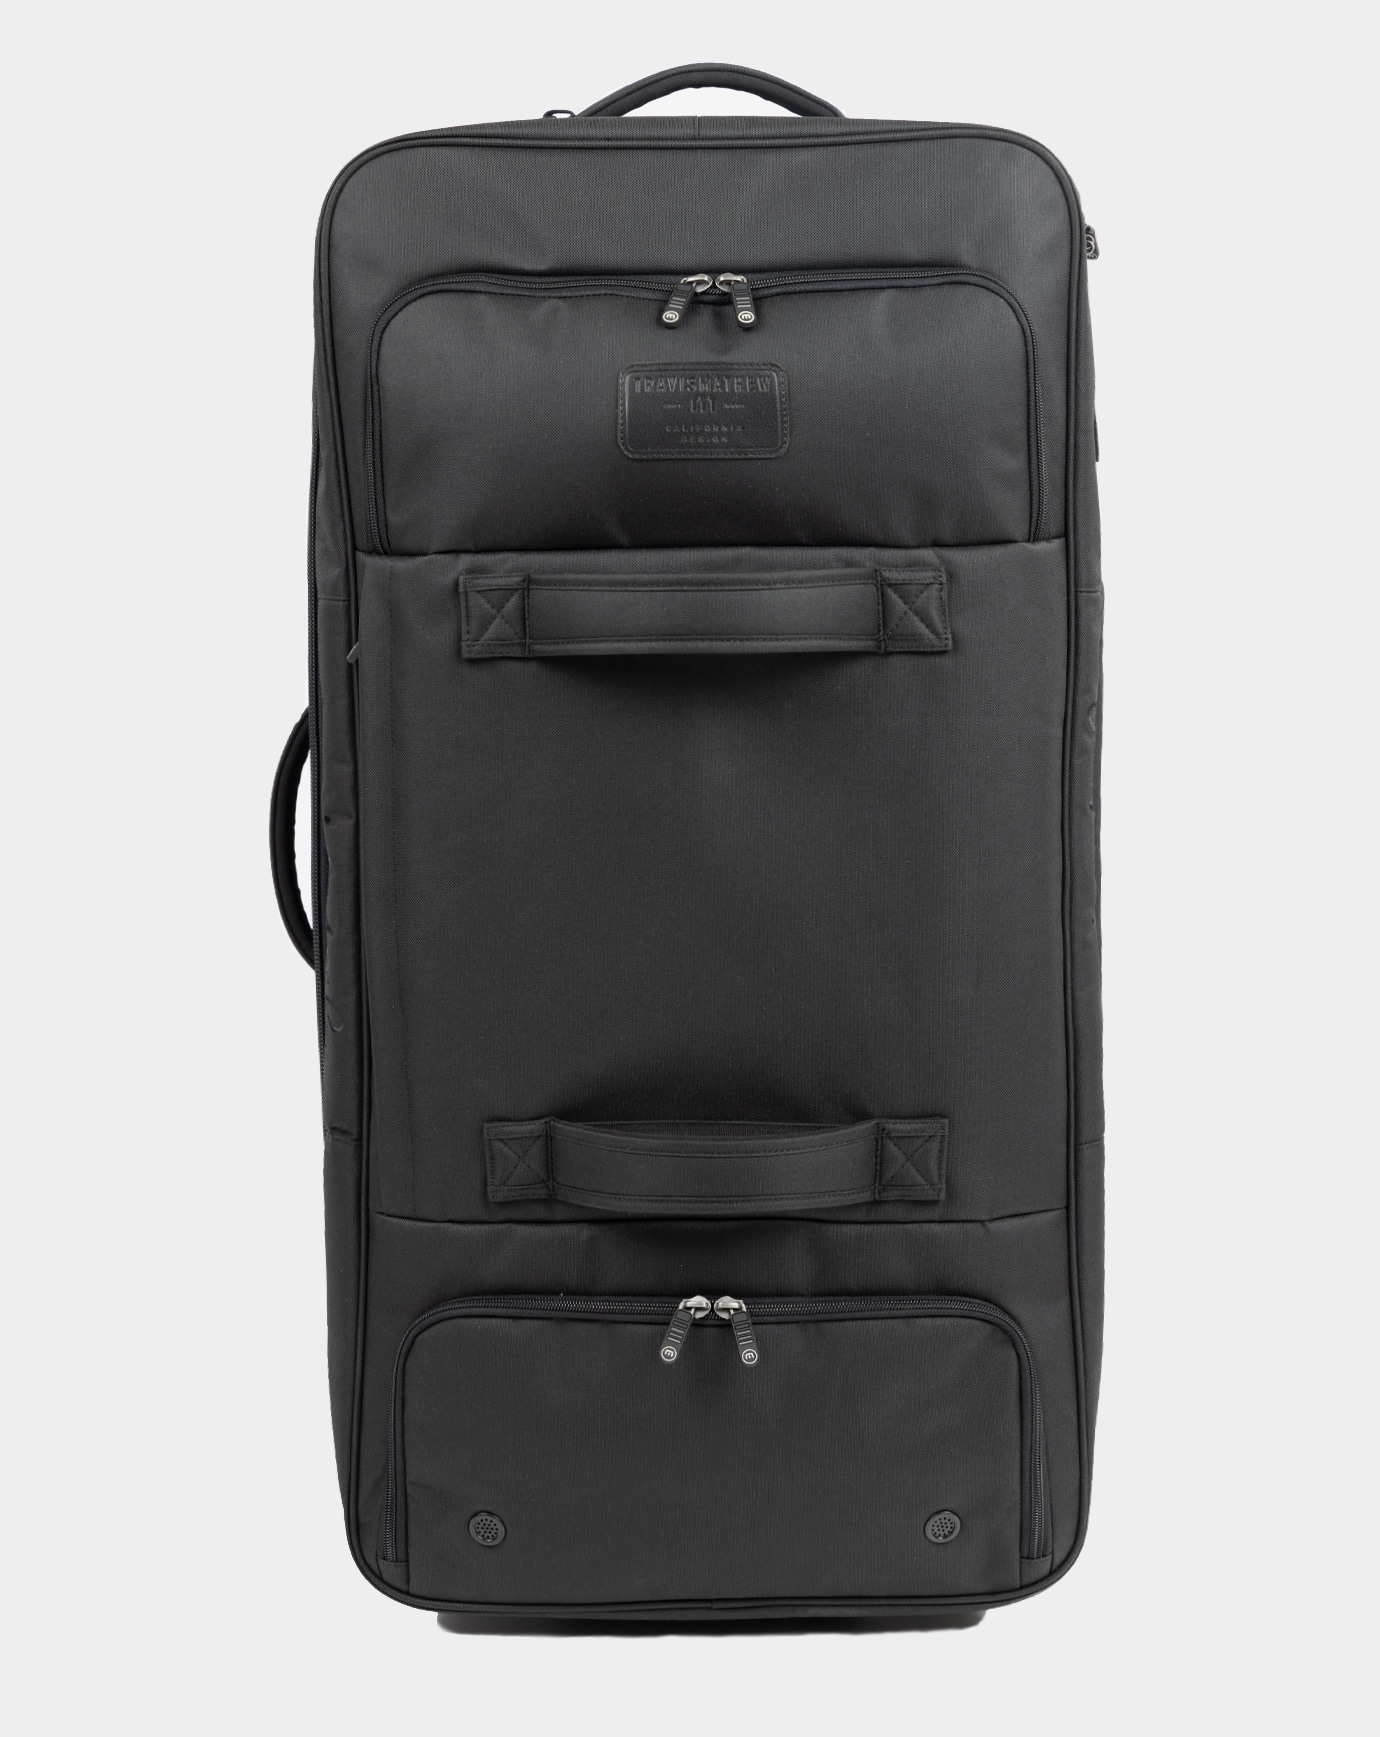 Buy Duffle Bag Organizer / Duffle Bag Insert / Liner Protector Online in  India 